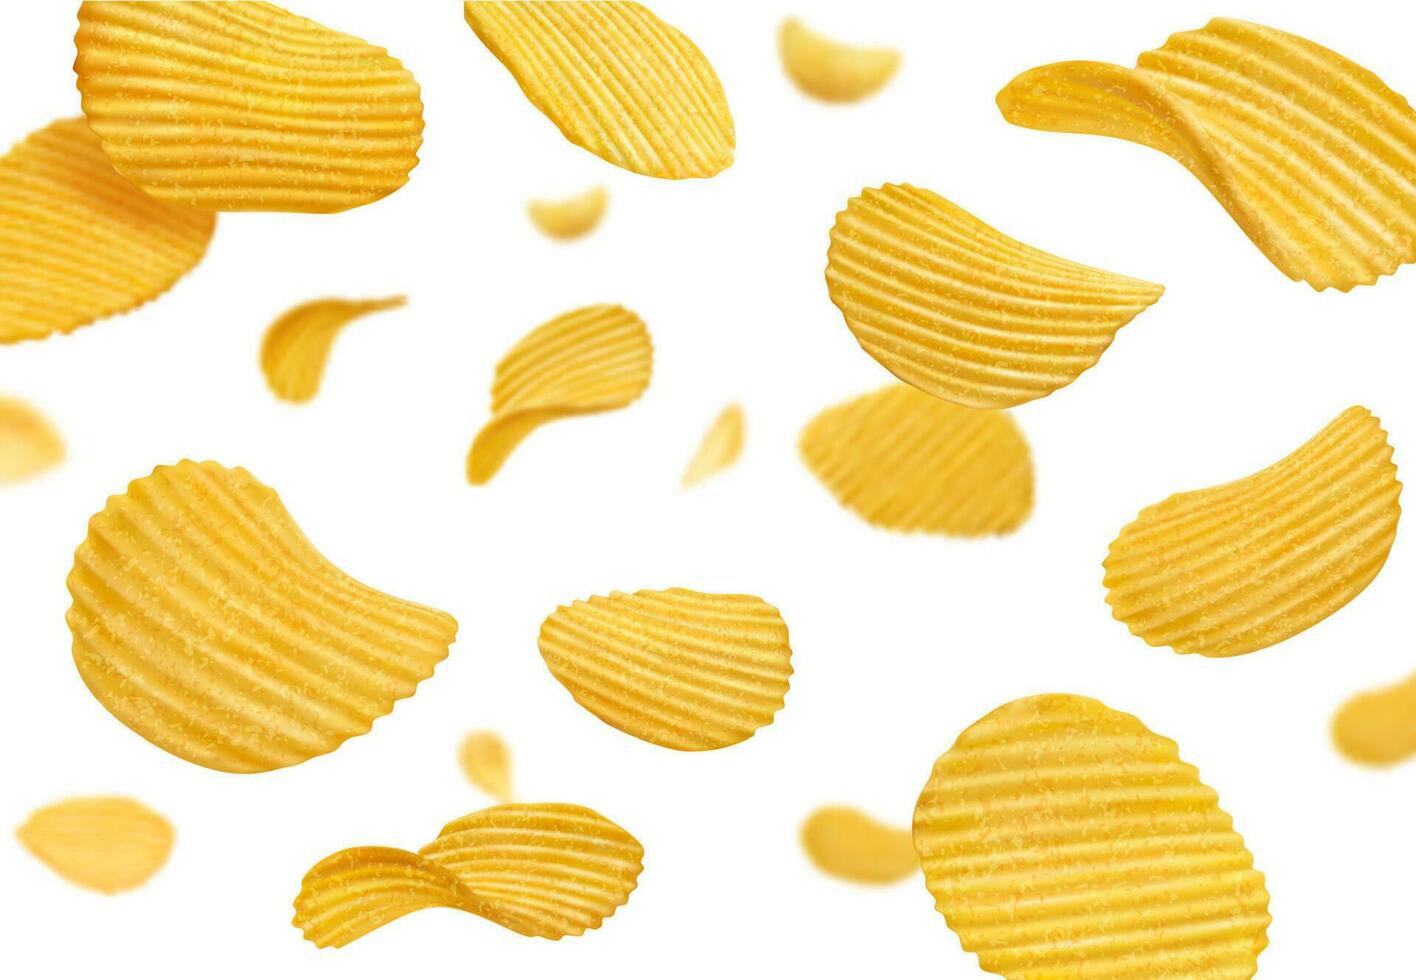 fliegend, fallen knusprig Welligkeit Kartoffel Chips Spritzen vektor